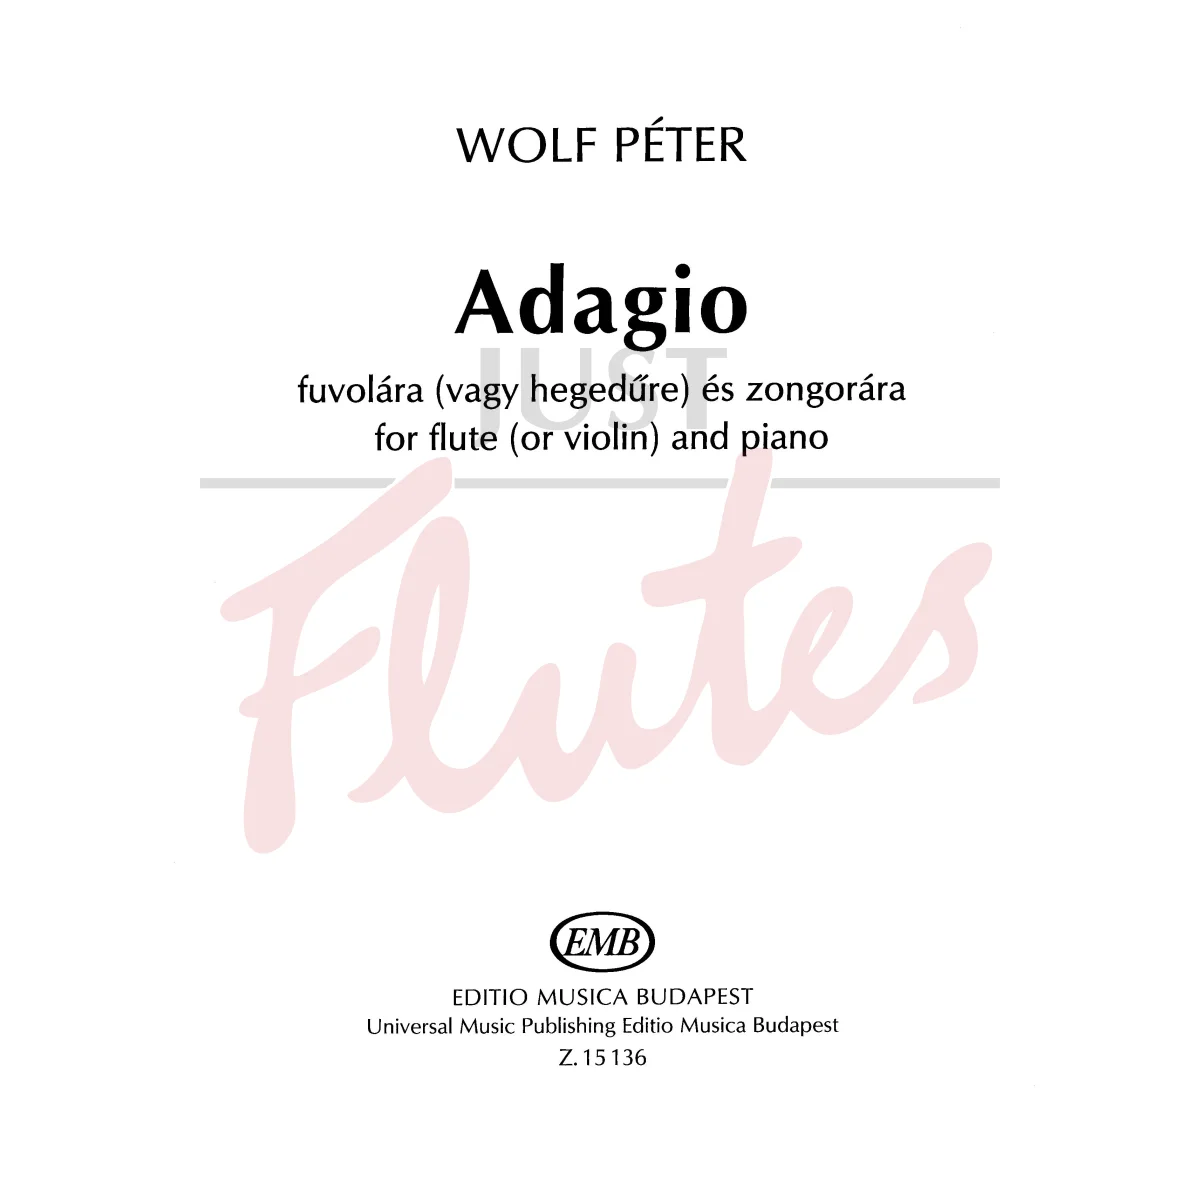 Adagio for Flute or Violin and Piano